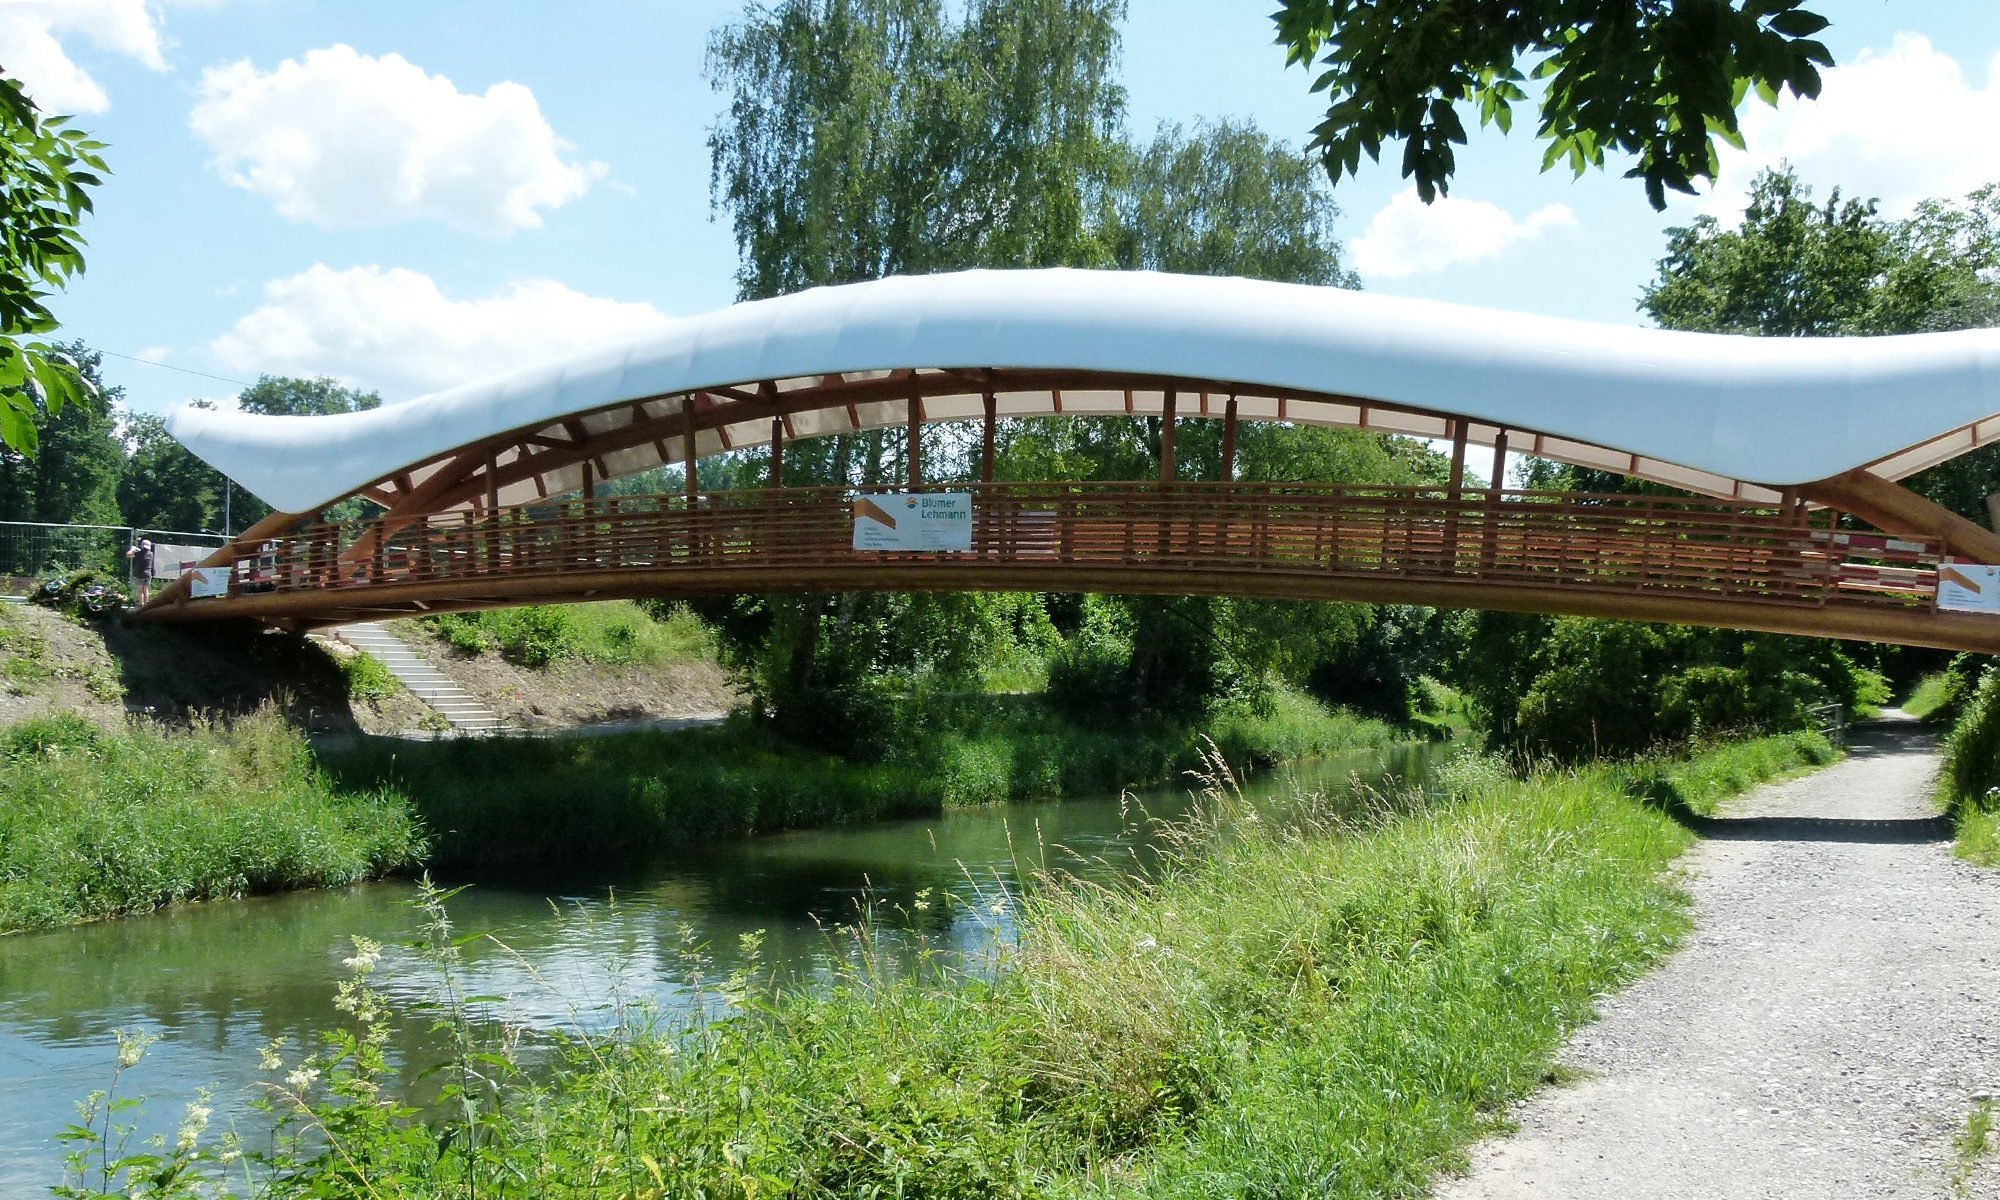 Vue d’ensemble par beau temps de l’«Aubrugg», un pont artistique en bois avec une couverture galbée blanche